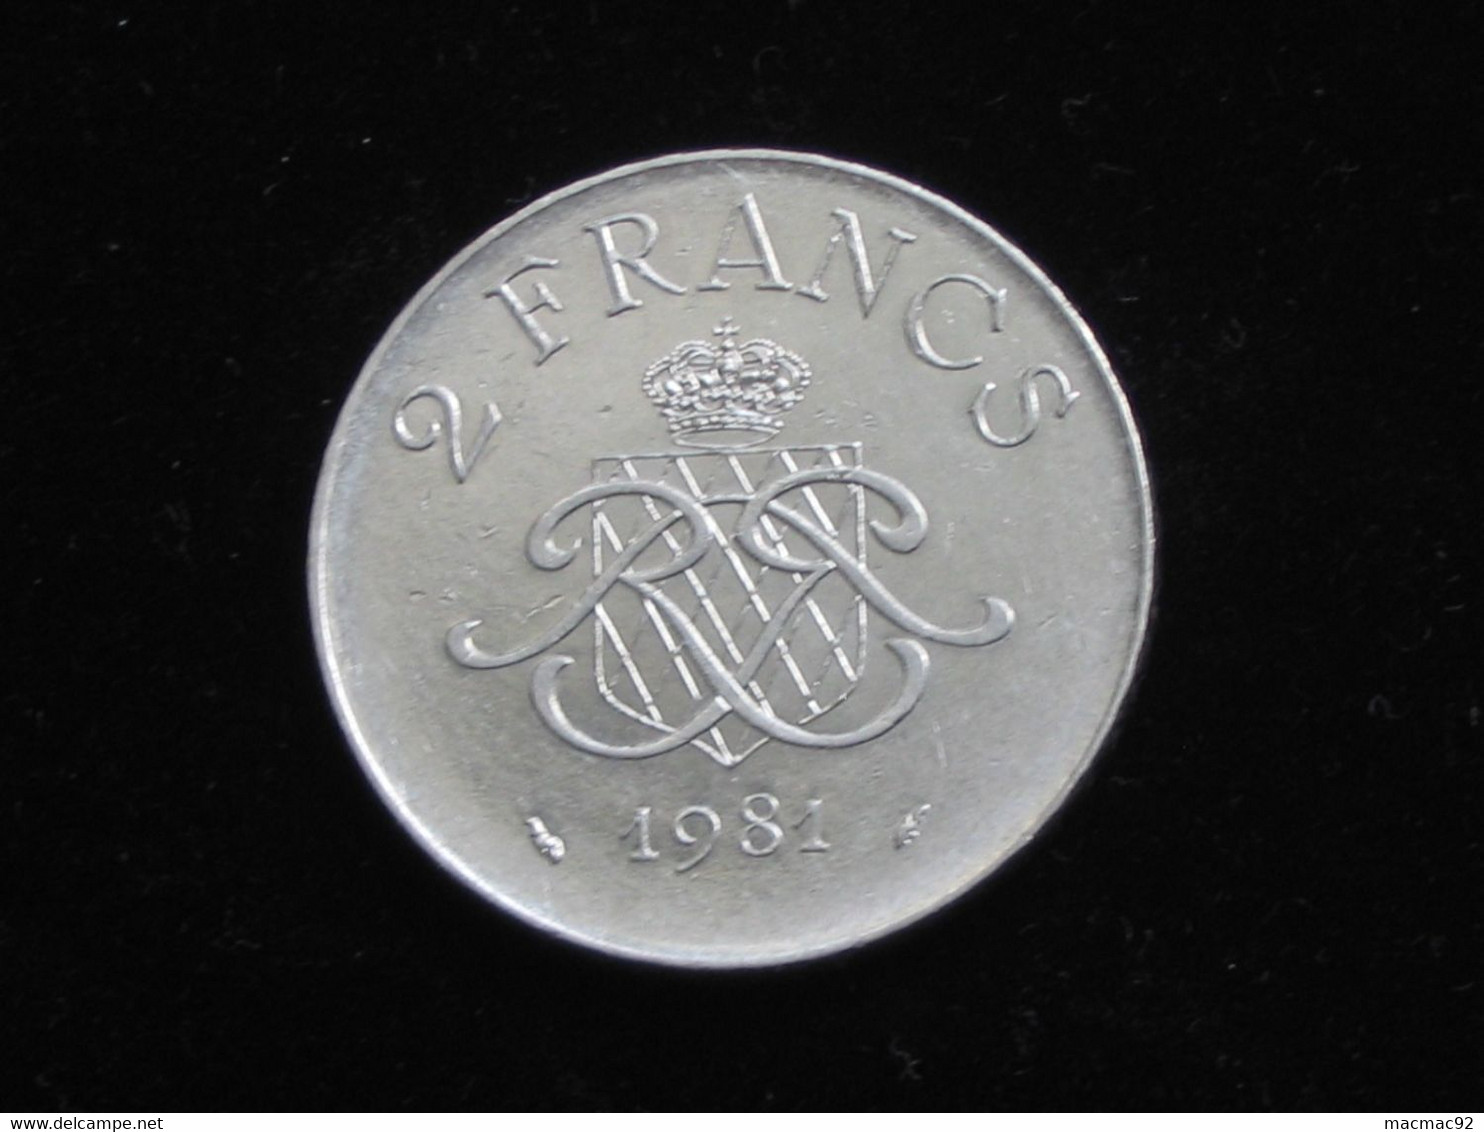 MONACO - 2 Francs 1981 - Rainier III Prince De Monaco **** EN ACHAT IMMEDIAT **** - 1949-1956 Francos Antiguos